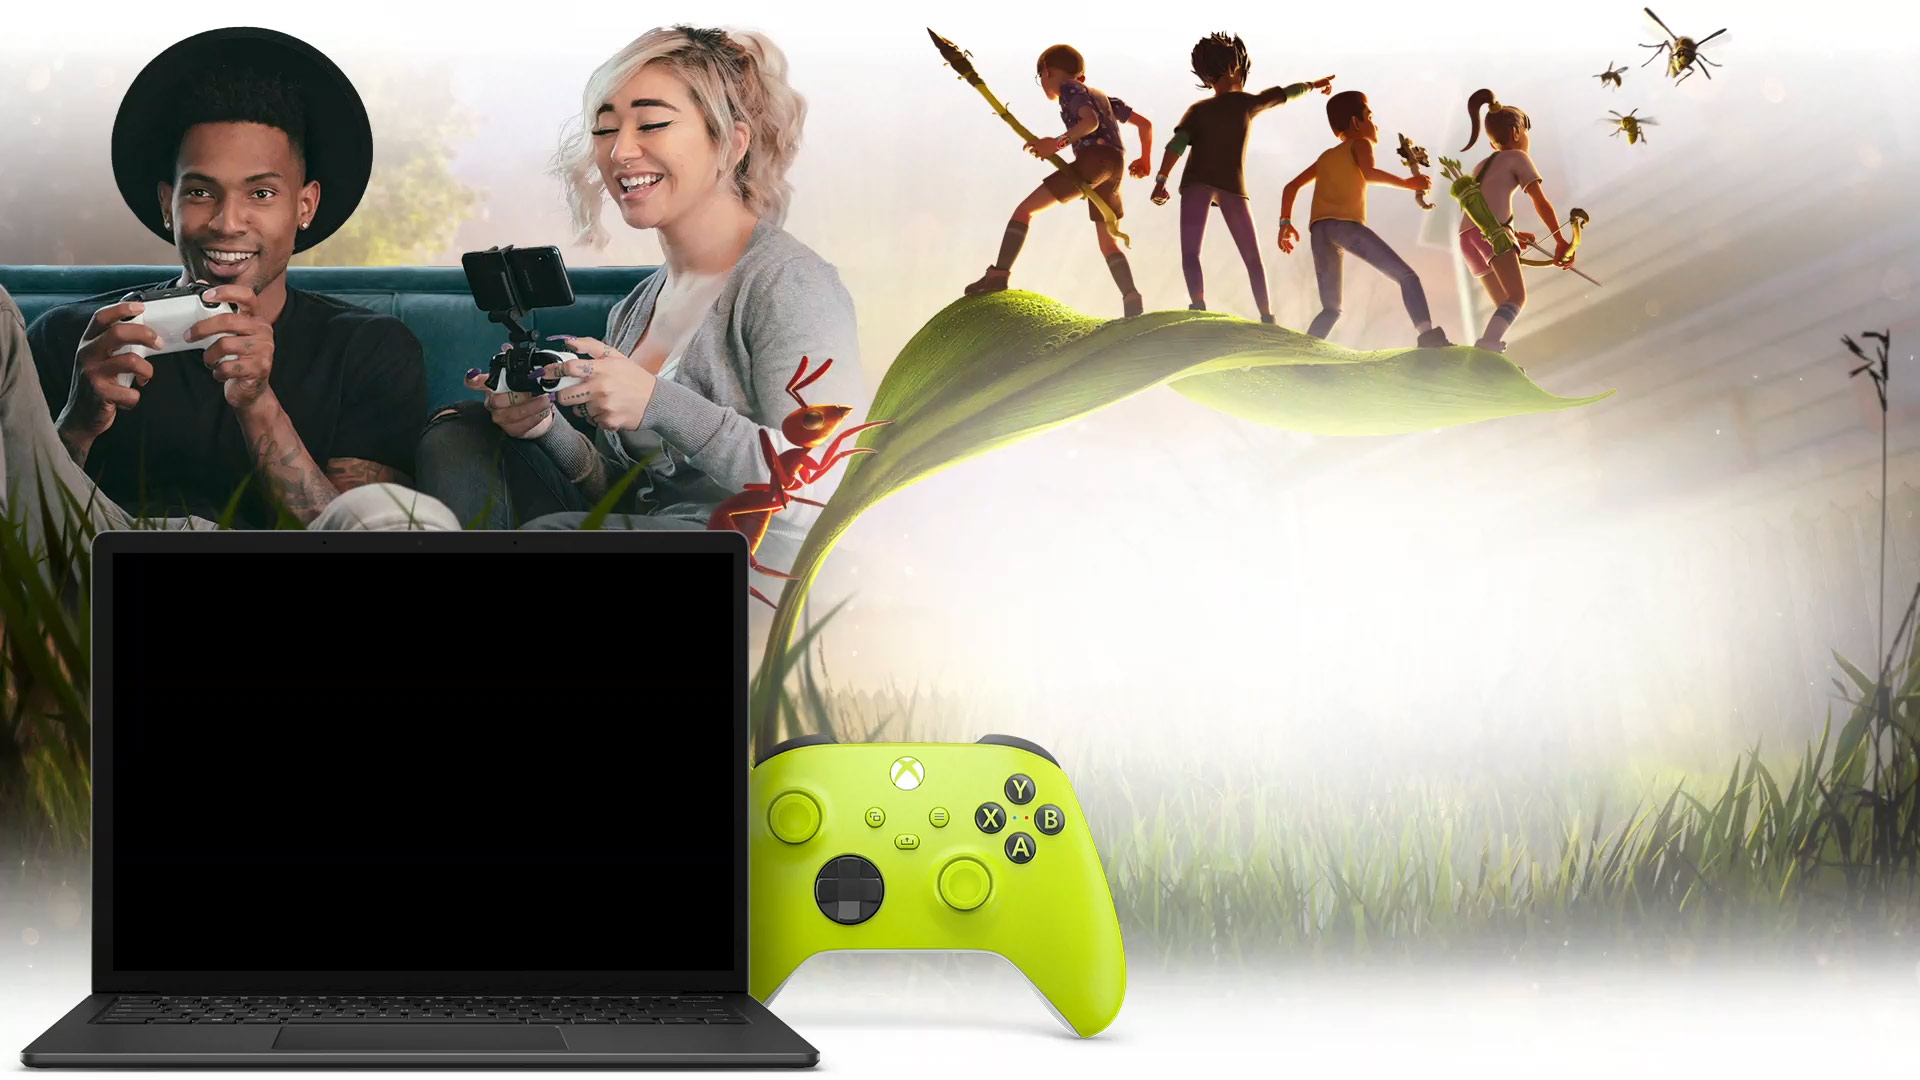 Twee mensen zitten samen op een bank games te spelen achter een laptop met Grounded-gameplay en een Electric Volt Xbox draadloze controller